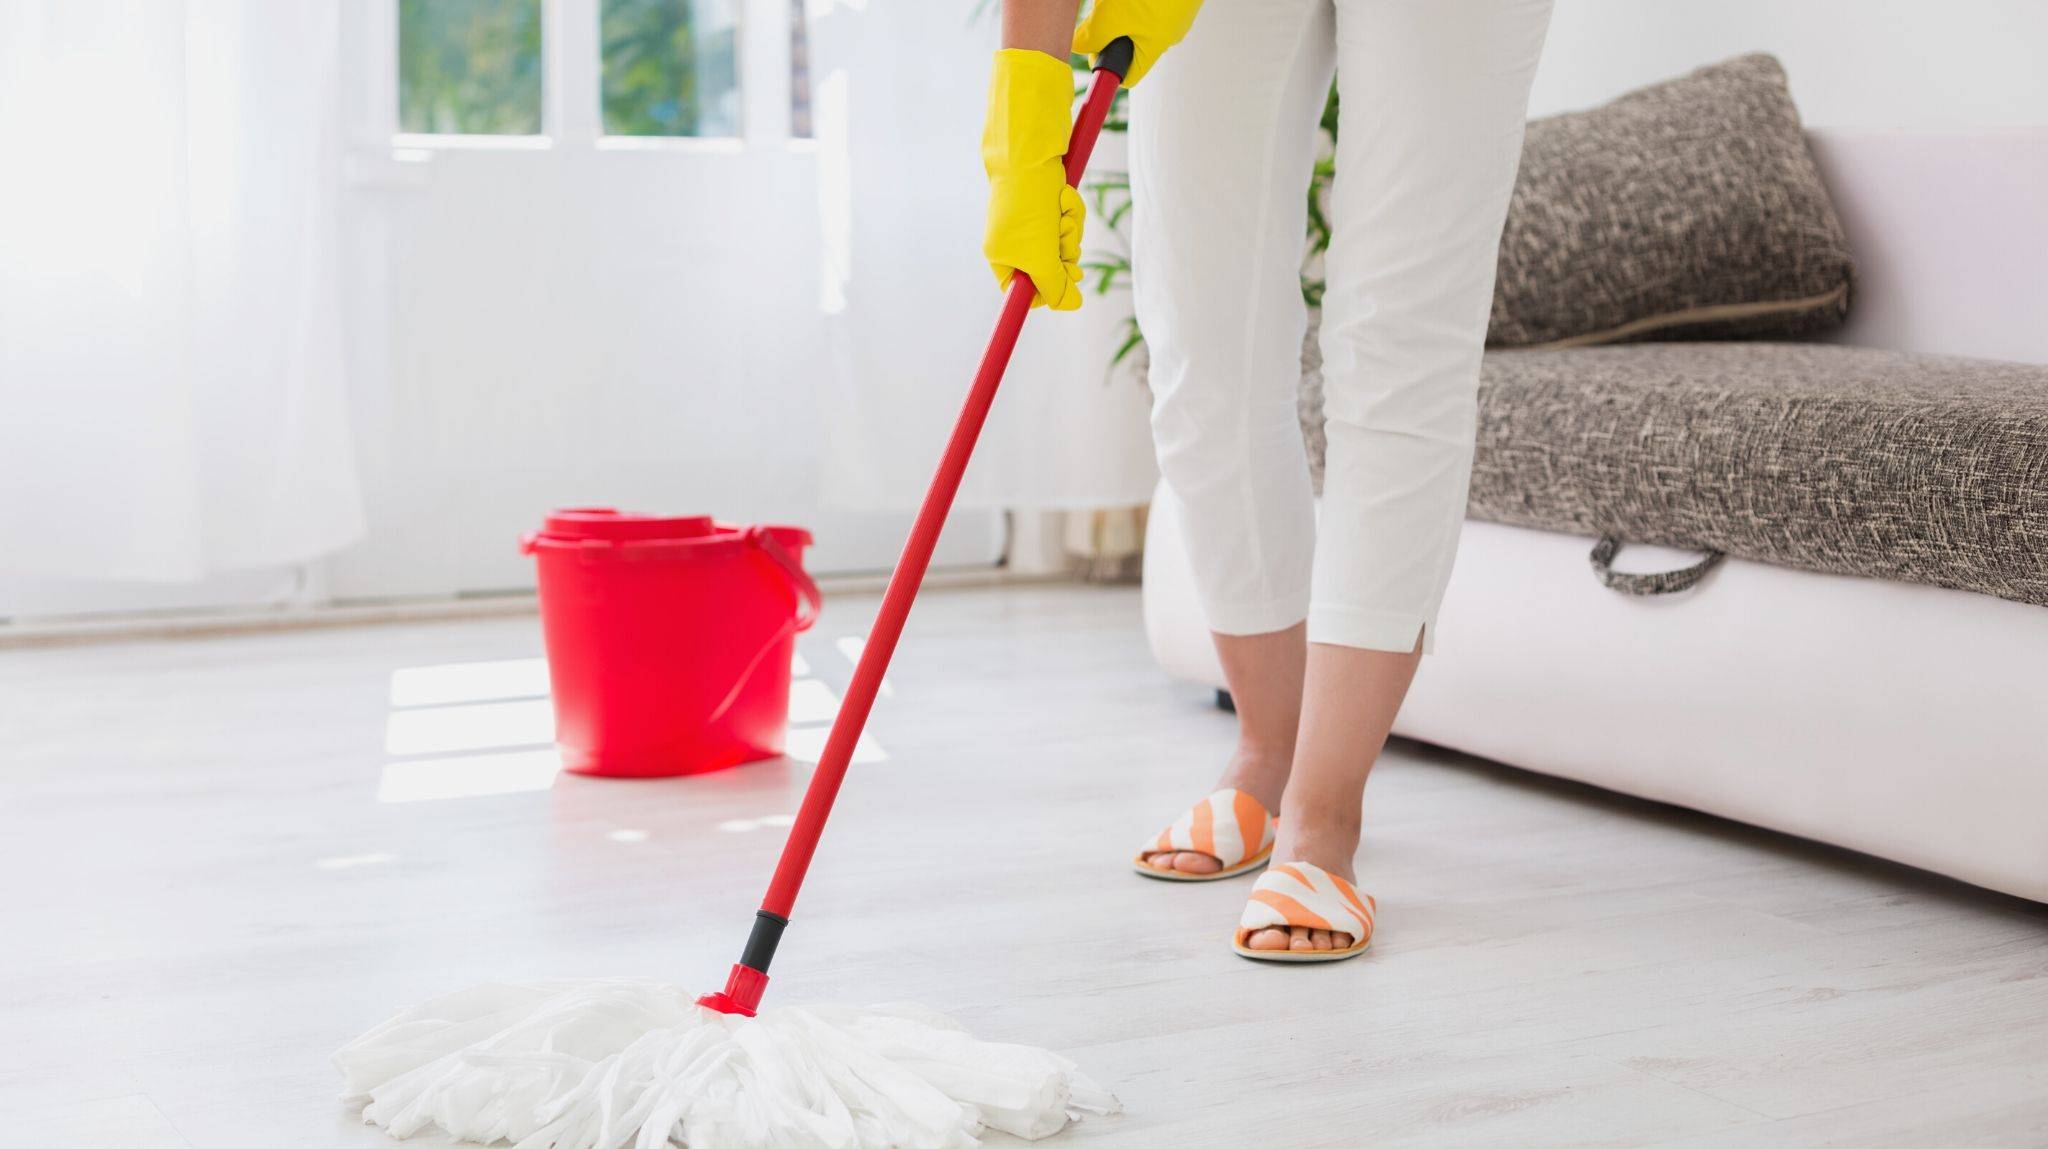 Уборка в доме во время беременности: можно ли мыть полы руками, пылесосить, мыть окна и протирать пыль на высоте